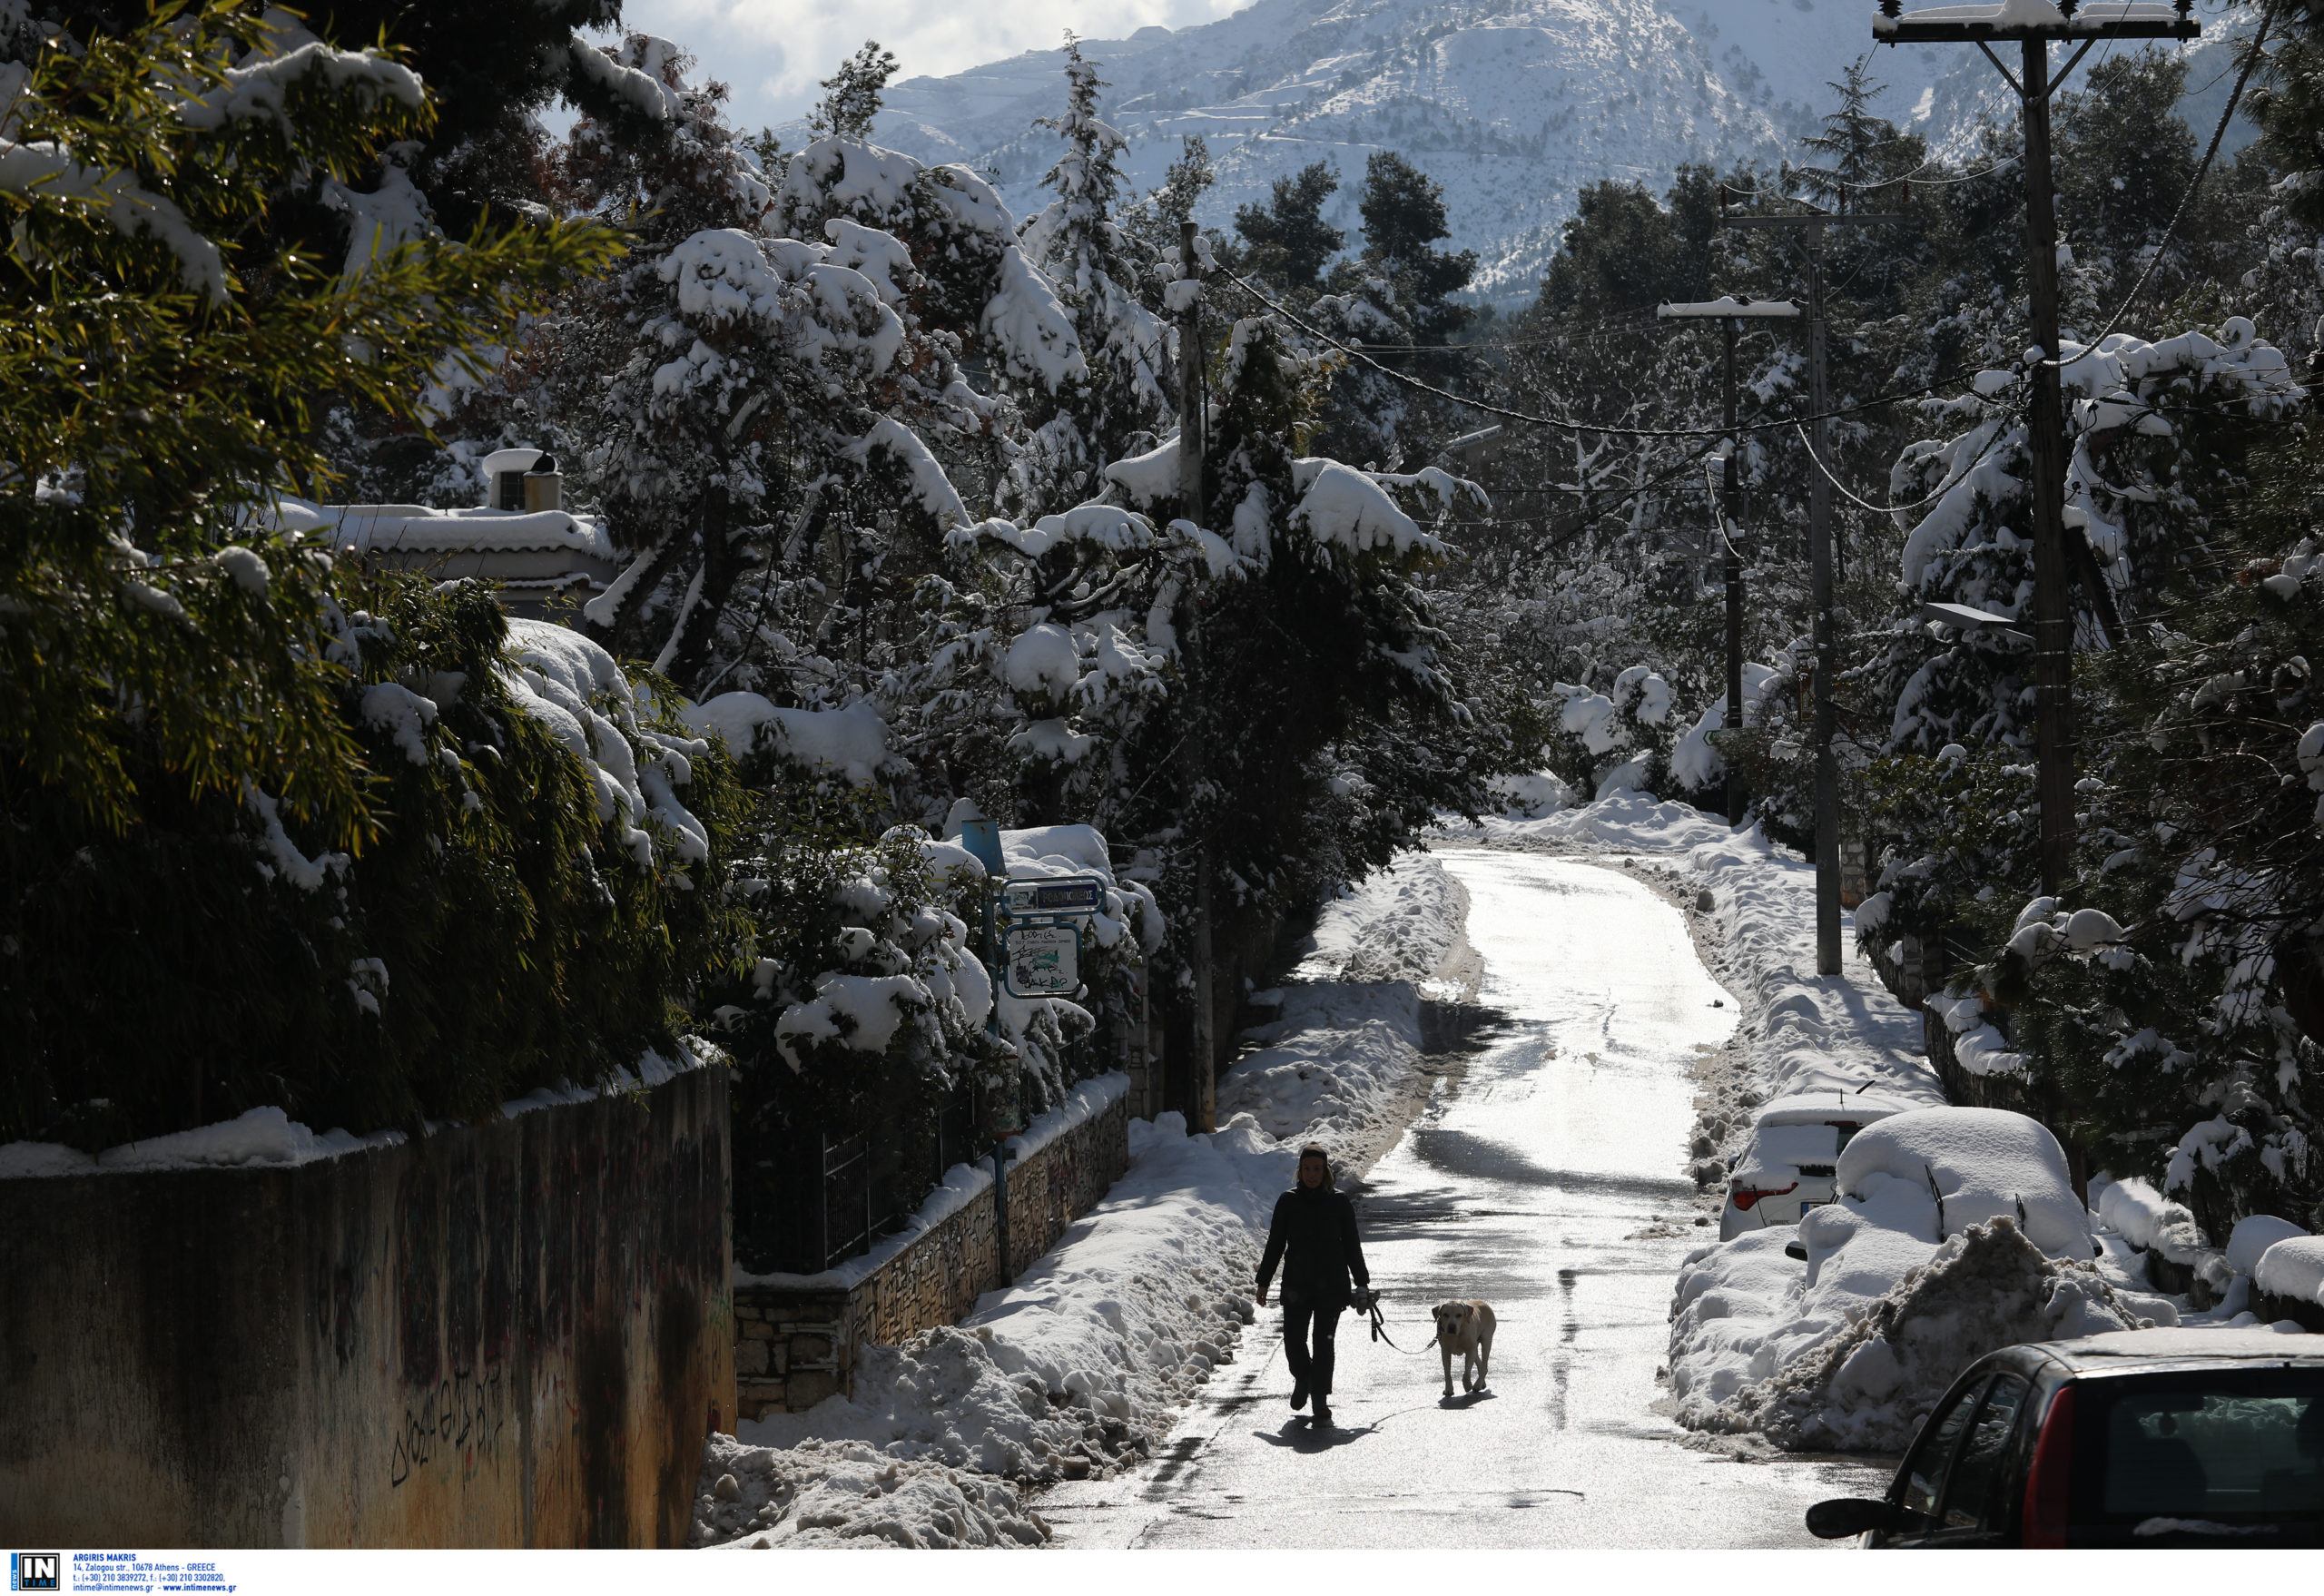 Καιρός-Meteo: Σε χαμηλά επίπεδα η χιονοκάλυψη τον φετινό χειμώνα – Δείτε τους πίνακες